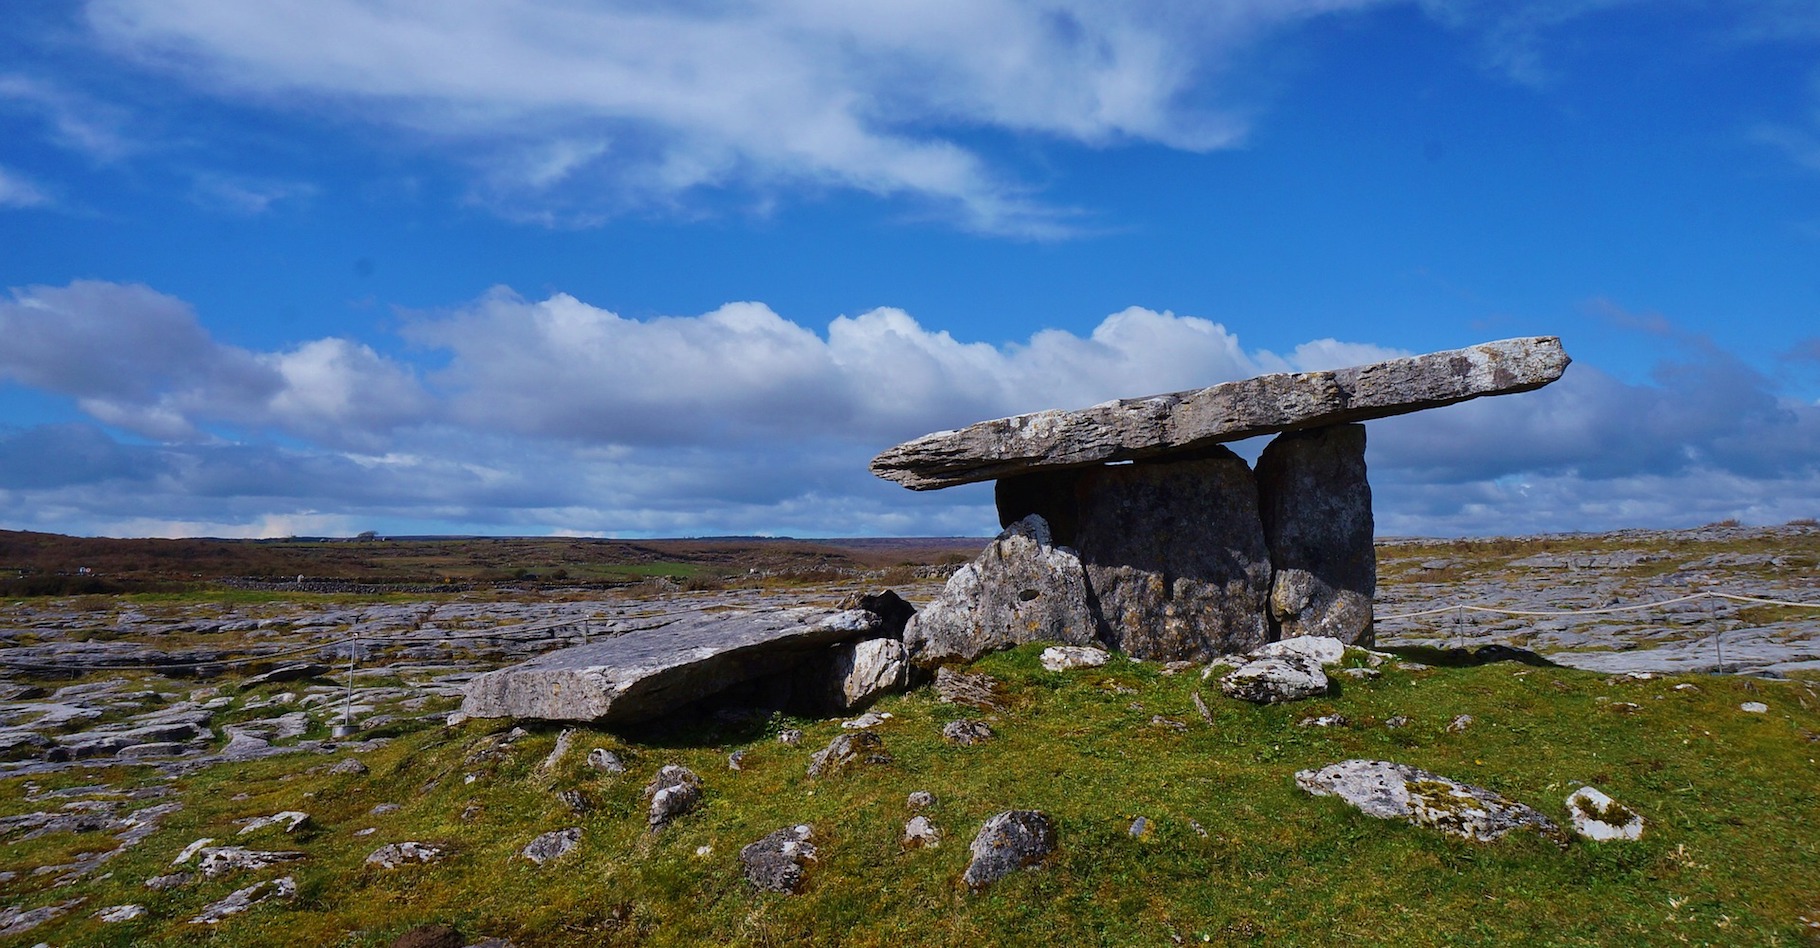 Les dolmens, des structures mégalithiques, sont nombreux en Europe de l’ouest. Ici, en Irlande. © carina_chen, Pixabay, CC0 Public DOmain